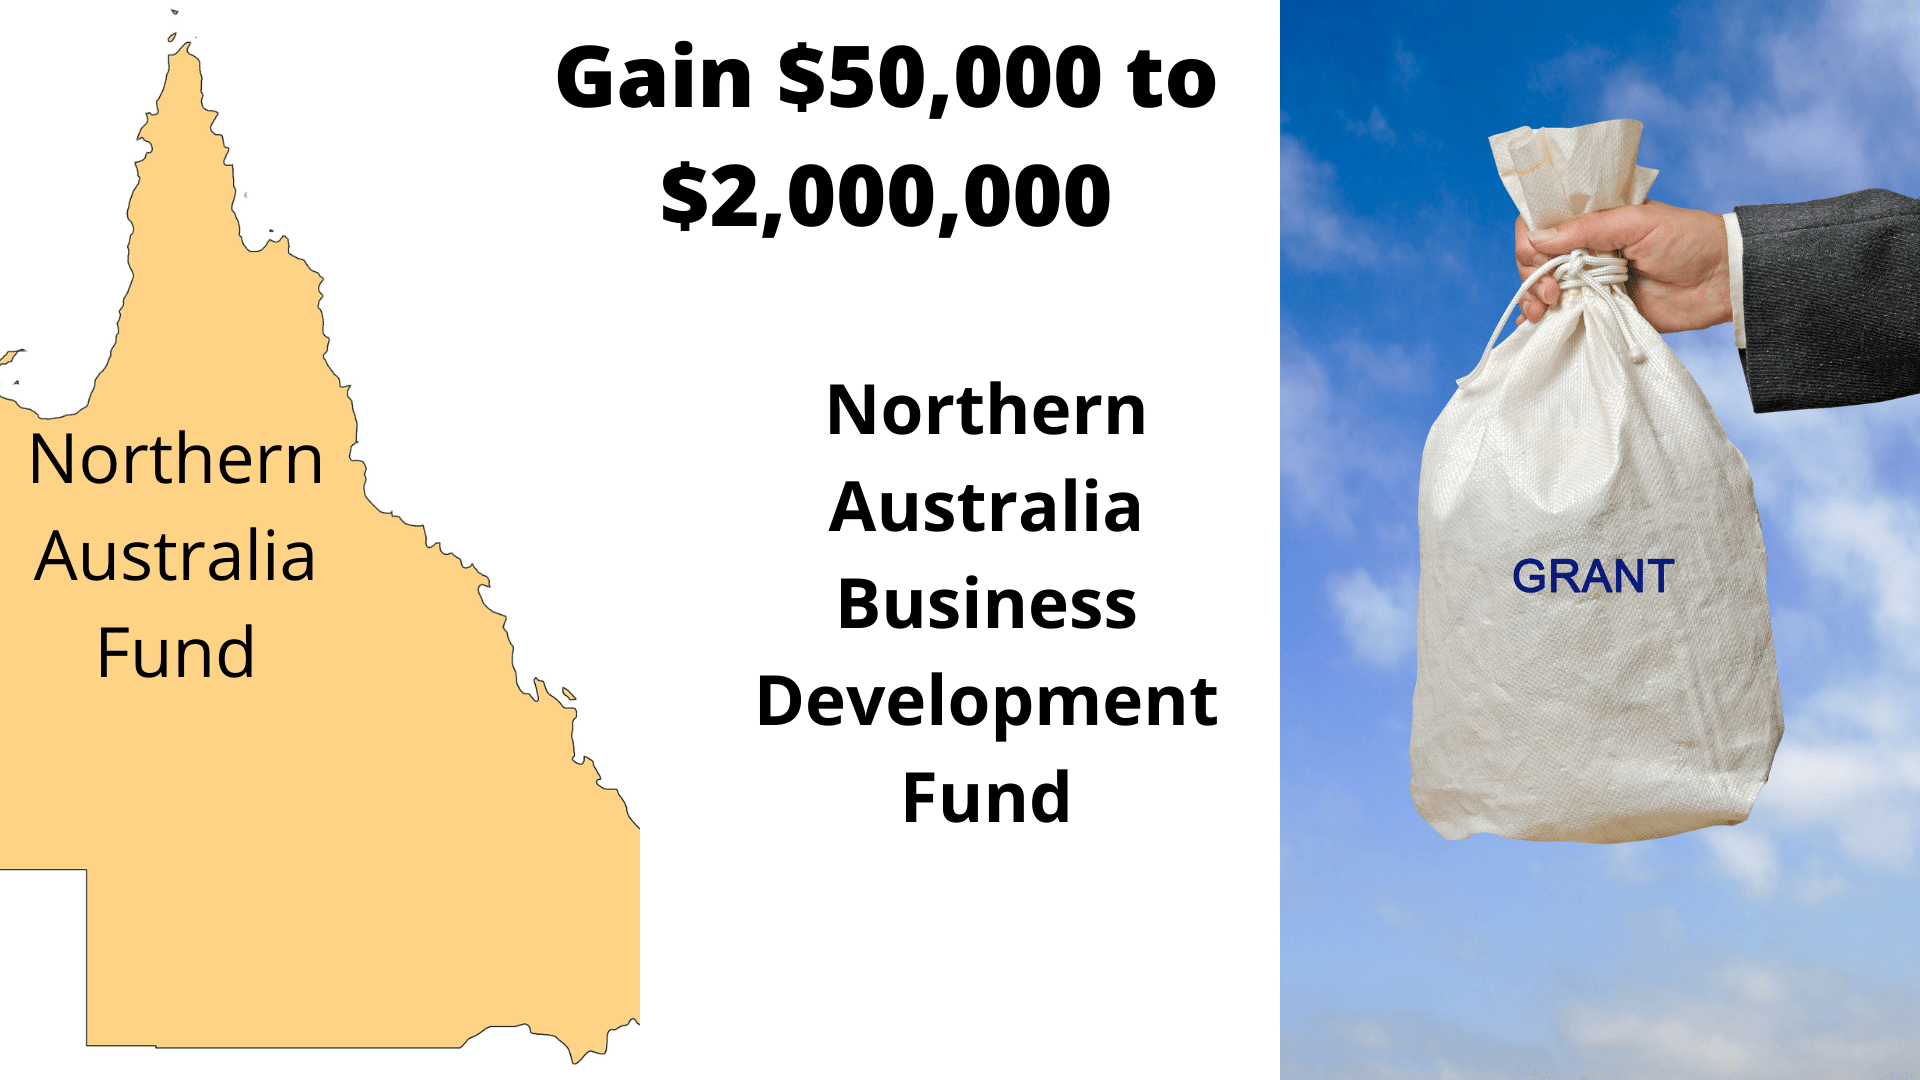 Northern Australia Business Development Fund